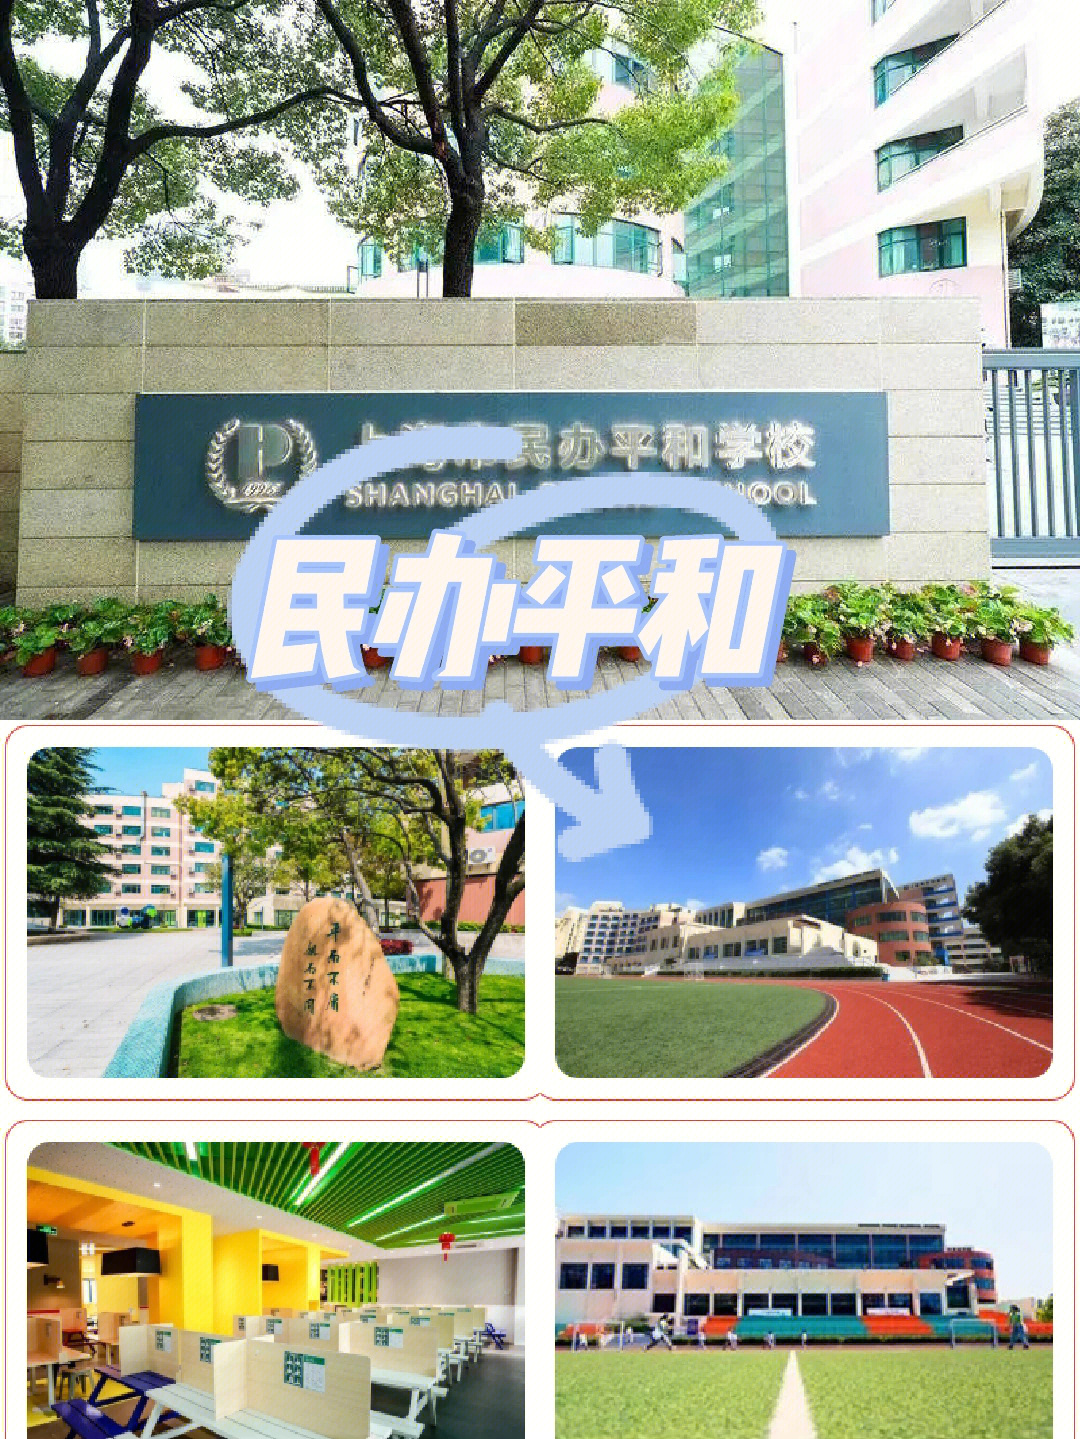 92上海民办平和双语学校学校占地面积37358平方米,建筑面积67698